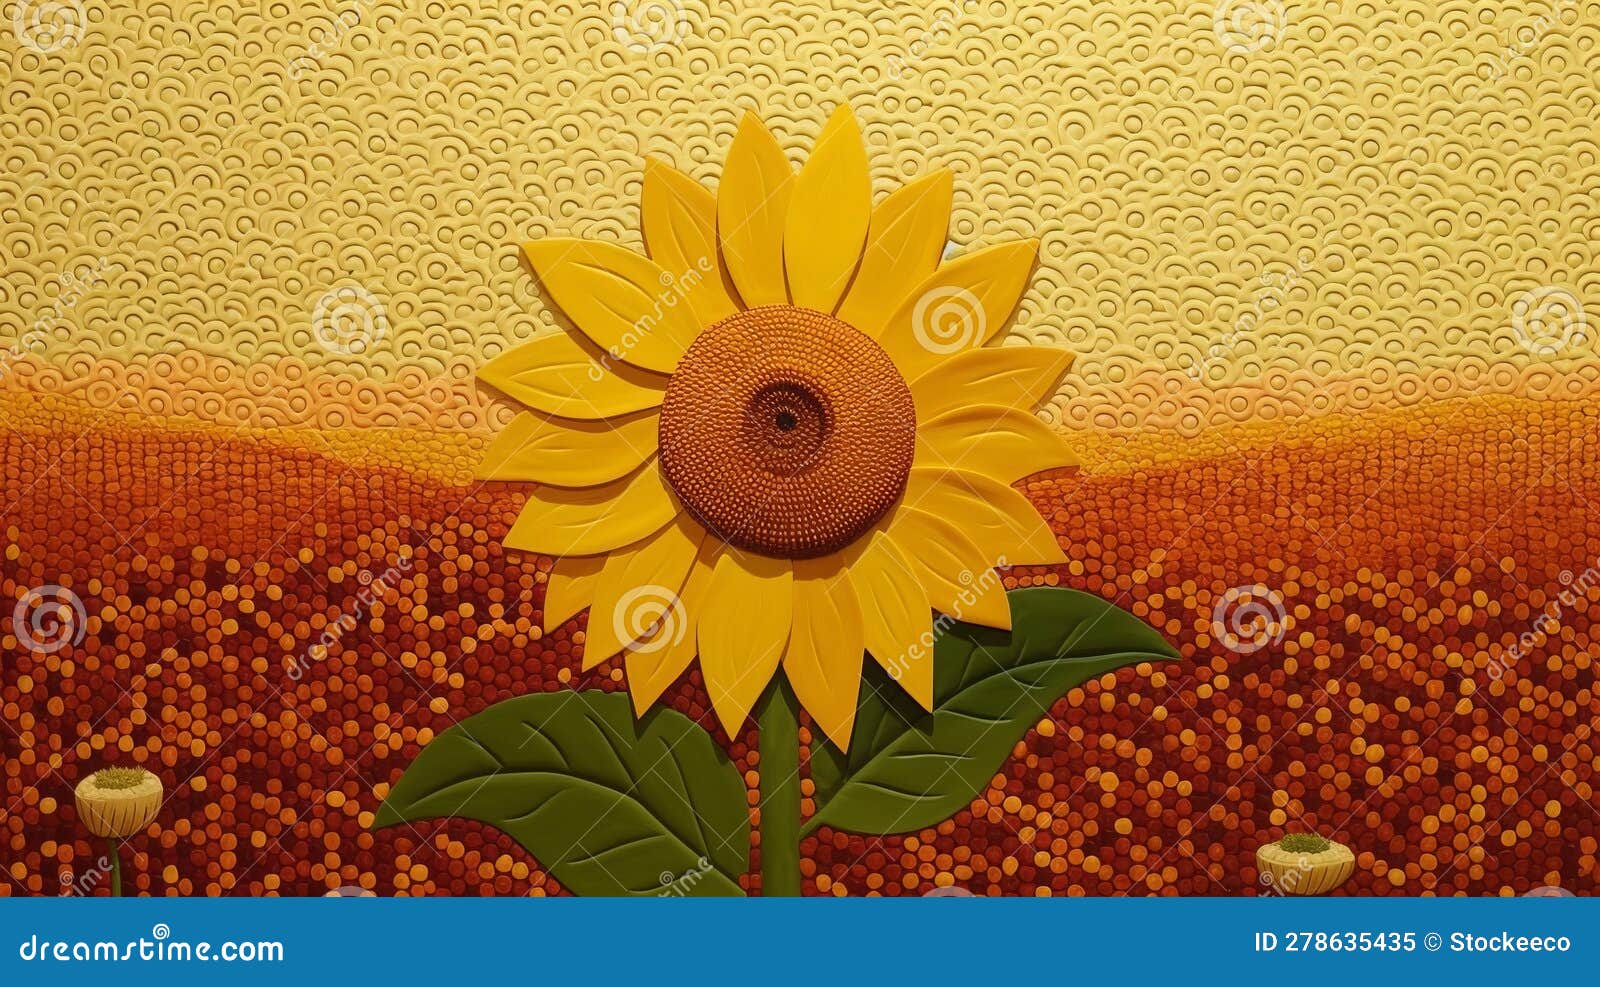 create art in lowell herrero sunflowers style